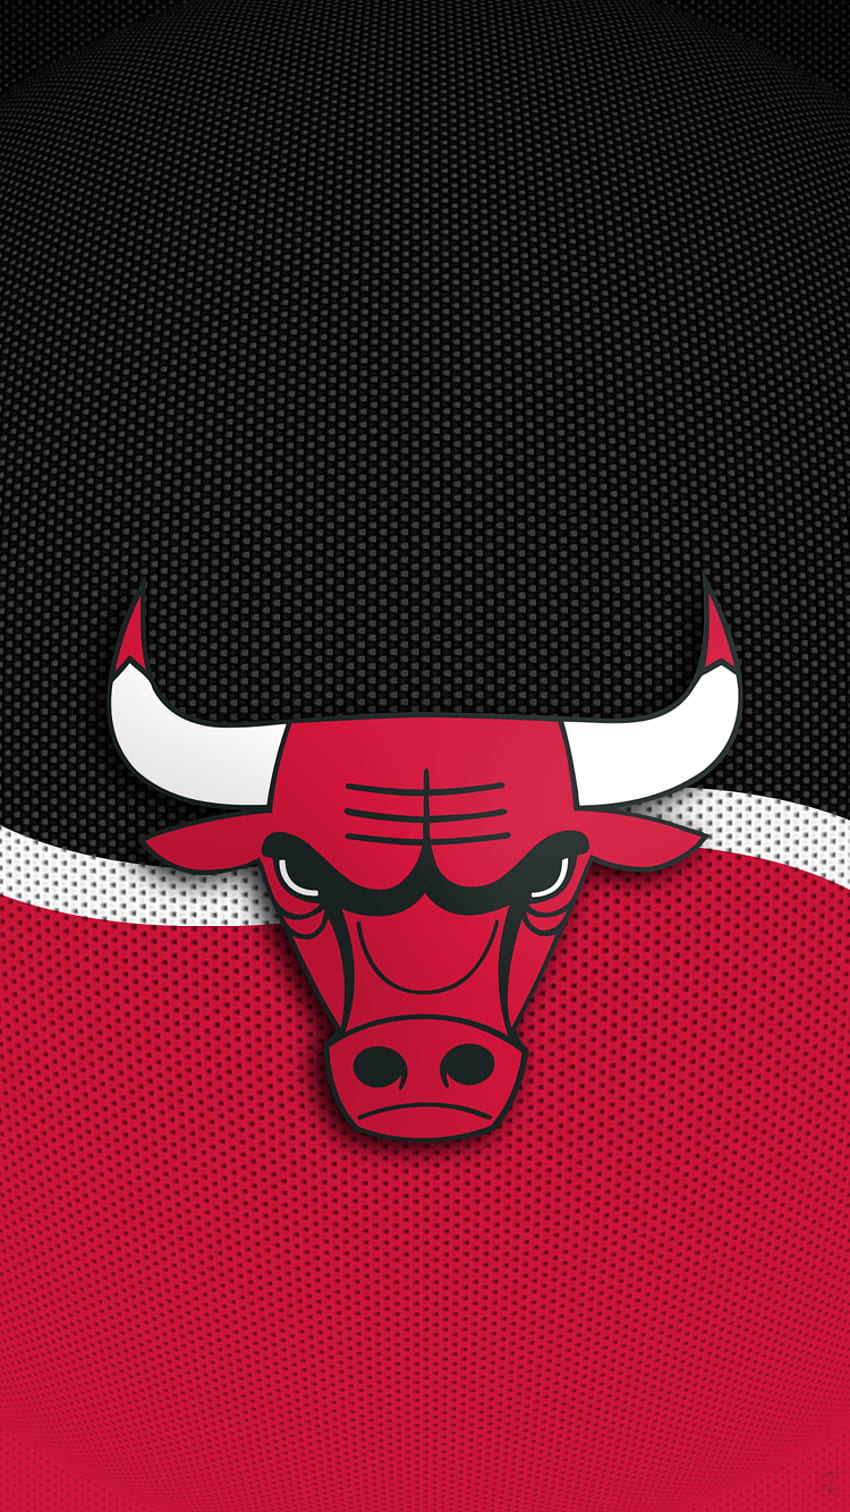 iPhone Merah Chicago Bulls wallpaper ponsel HD